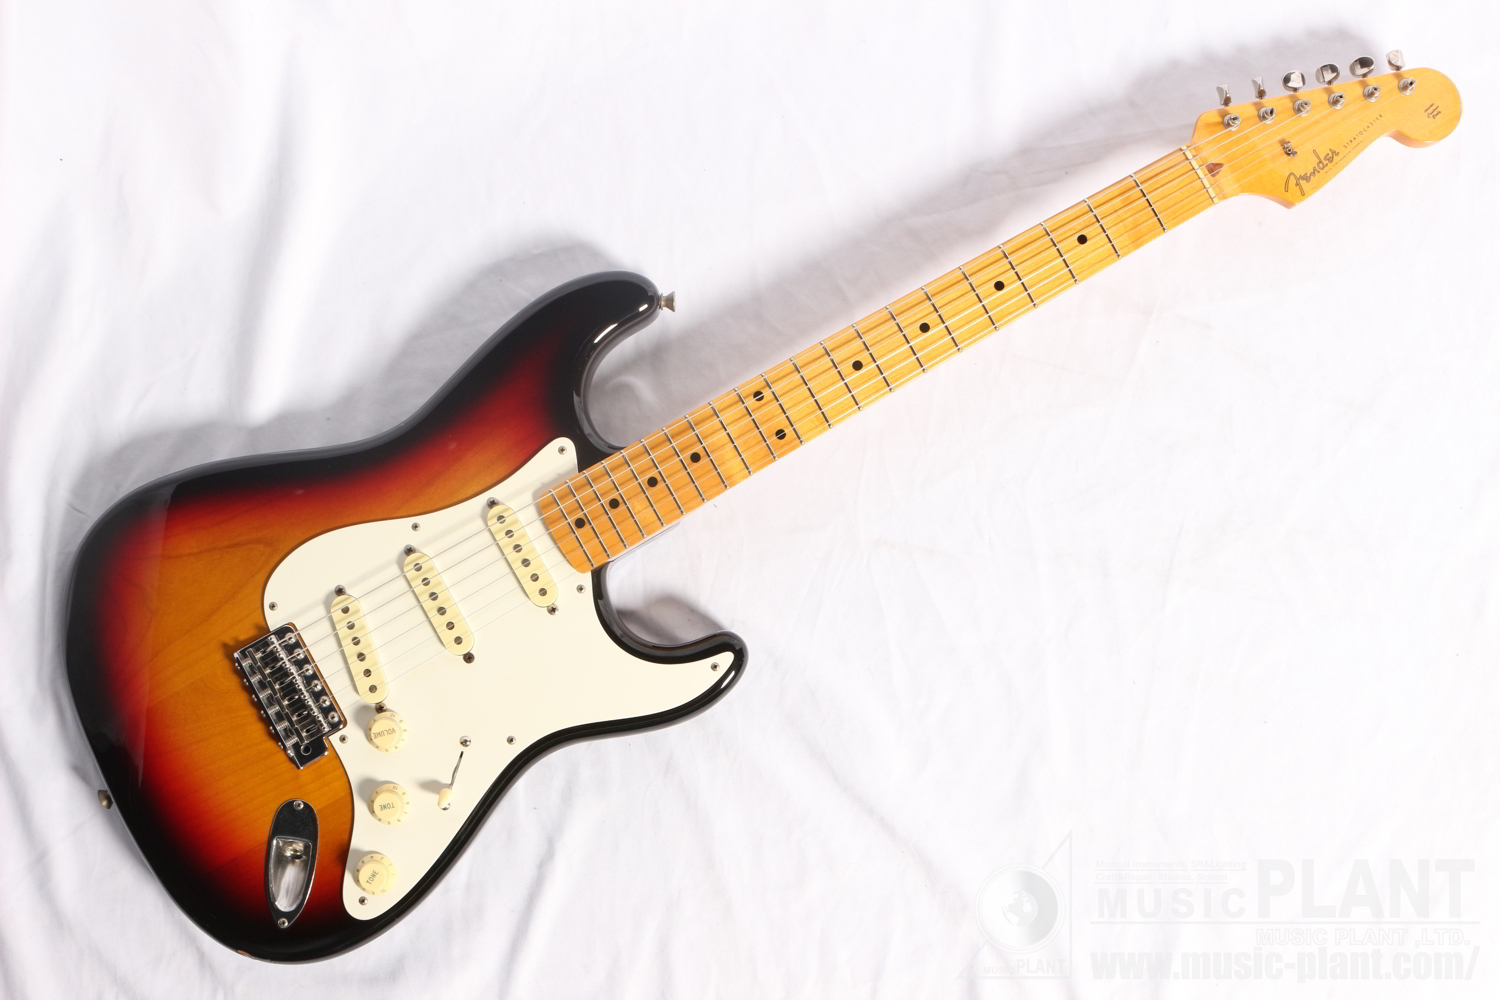 Fender Japan ストラトキャスターST58-70TX 3TS中古()売却済みです